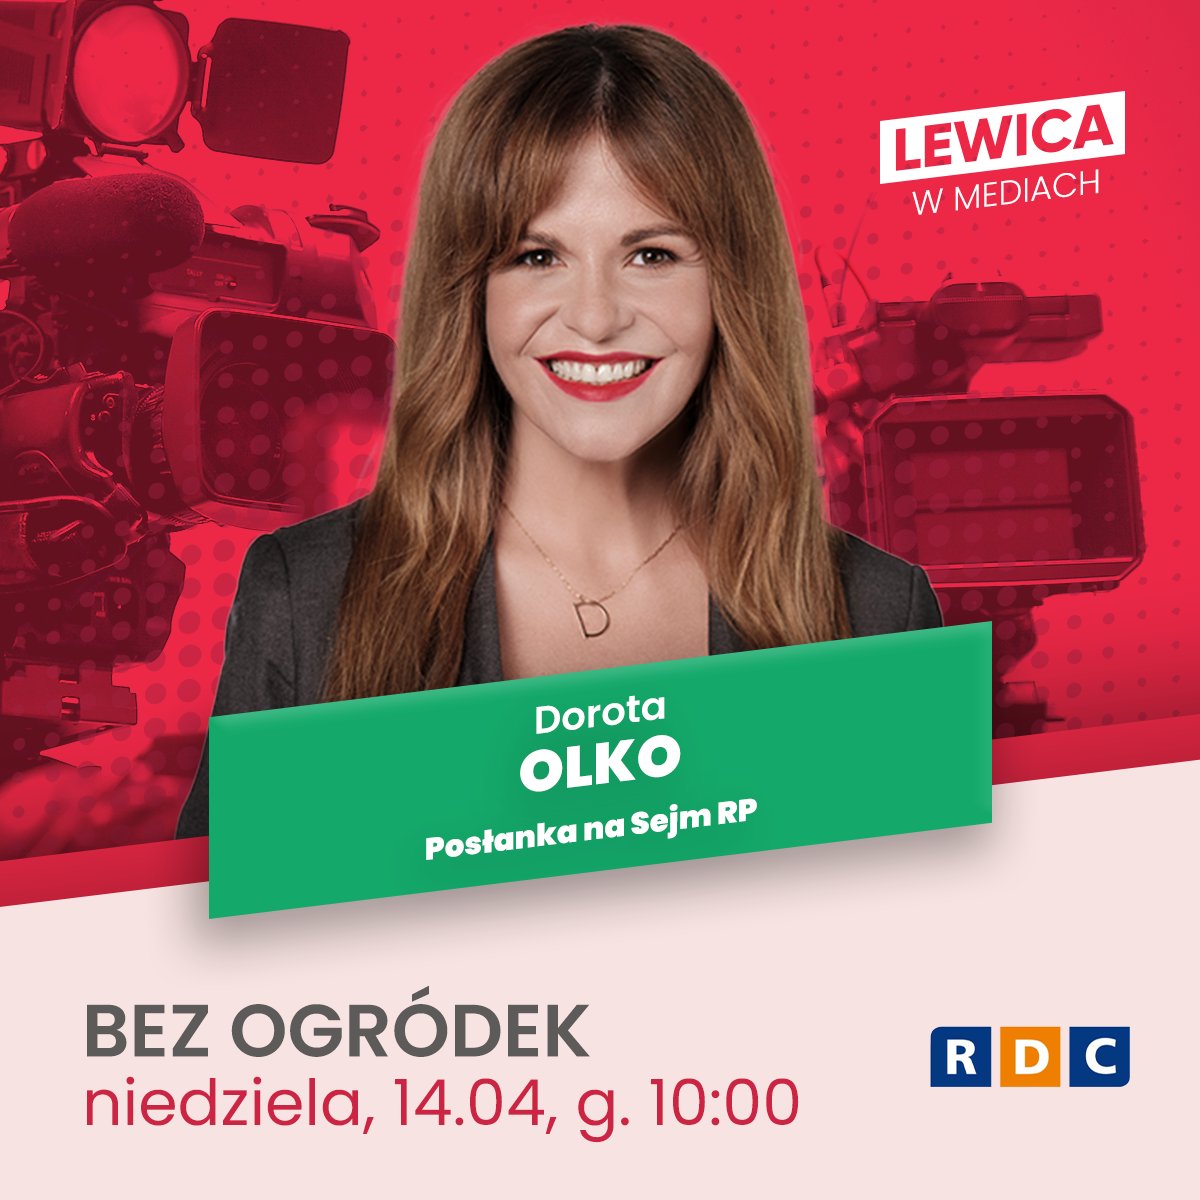 📻 Posłanka @dorota_olko jutro o 10:00 będzie gościnią audycji #BezOgródek w @rdcpolskieradio #LewicaWMediach